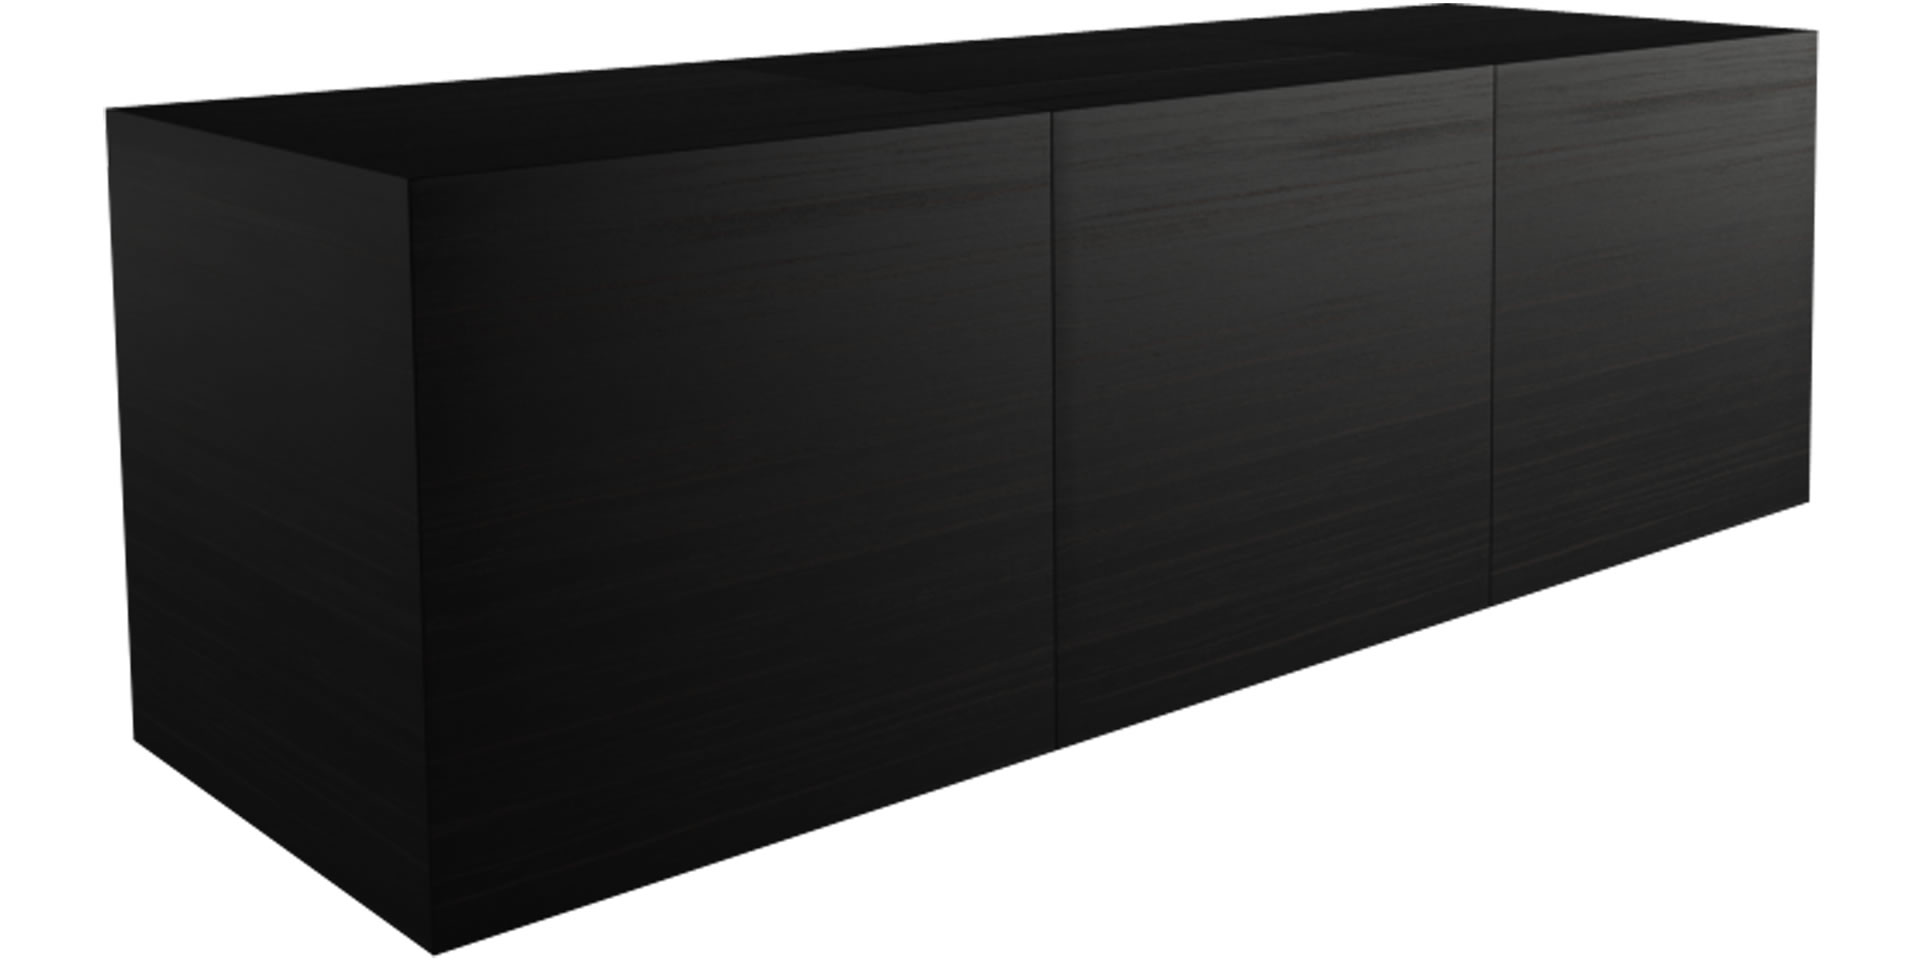 Schreibtisch dunkles Ebenholz edel minimalistisch